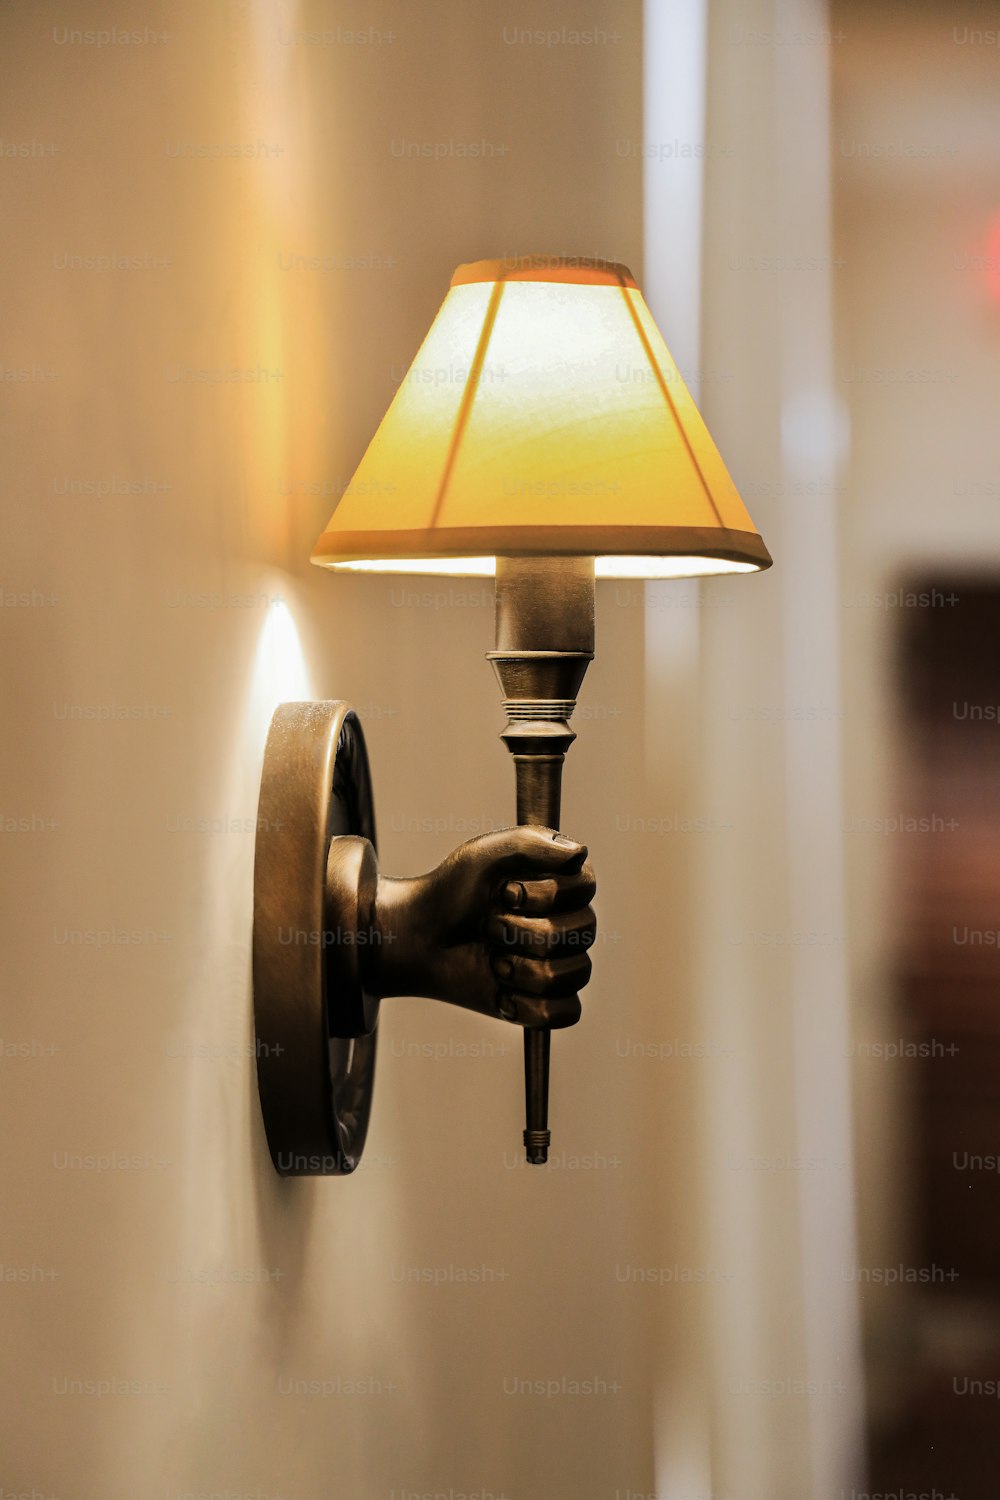 una lampada che si trova su una parete accanto a una lampada